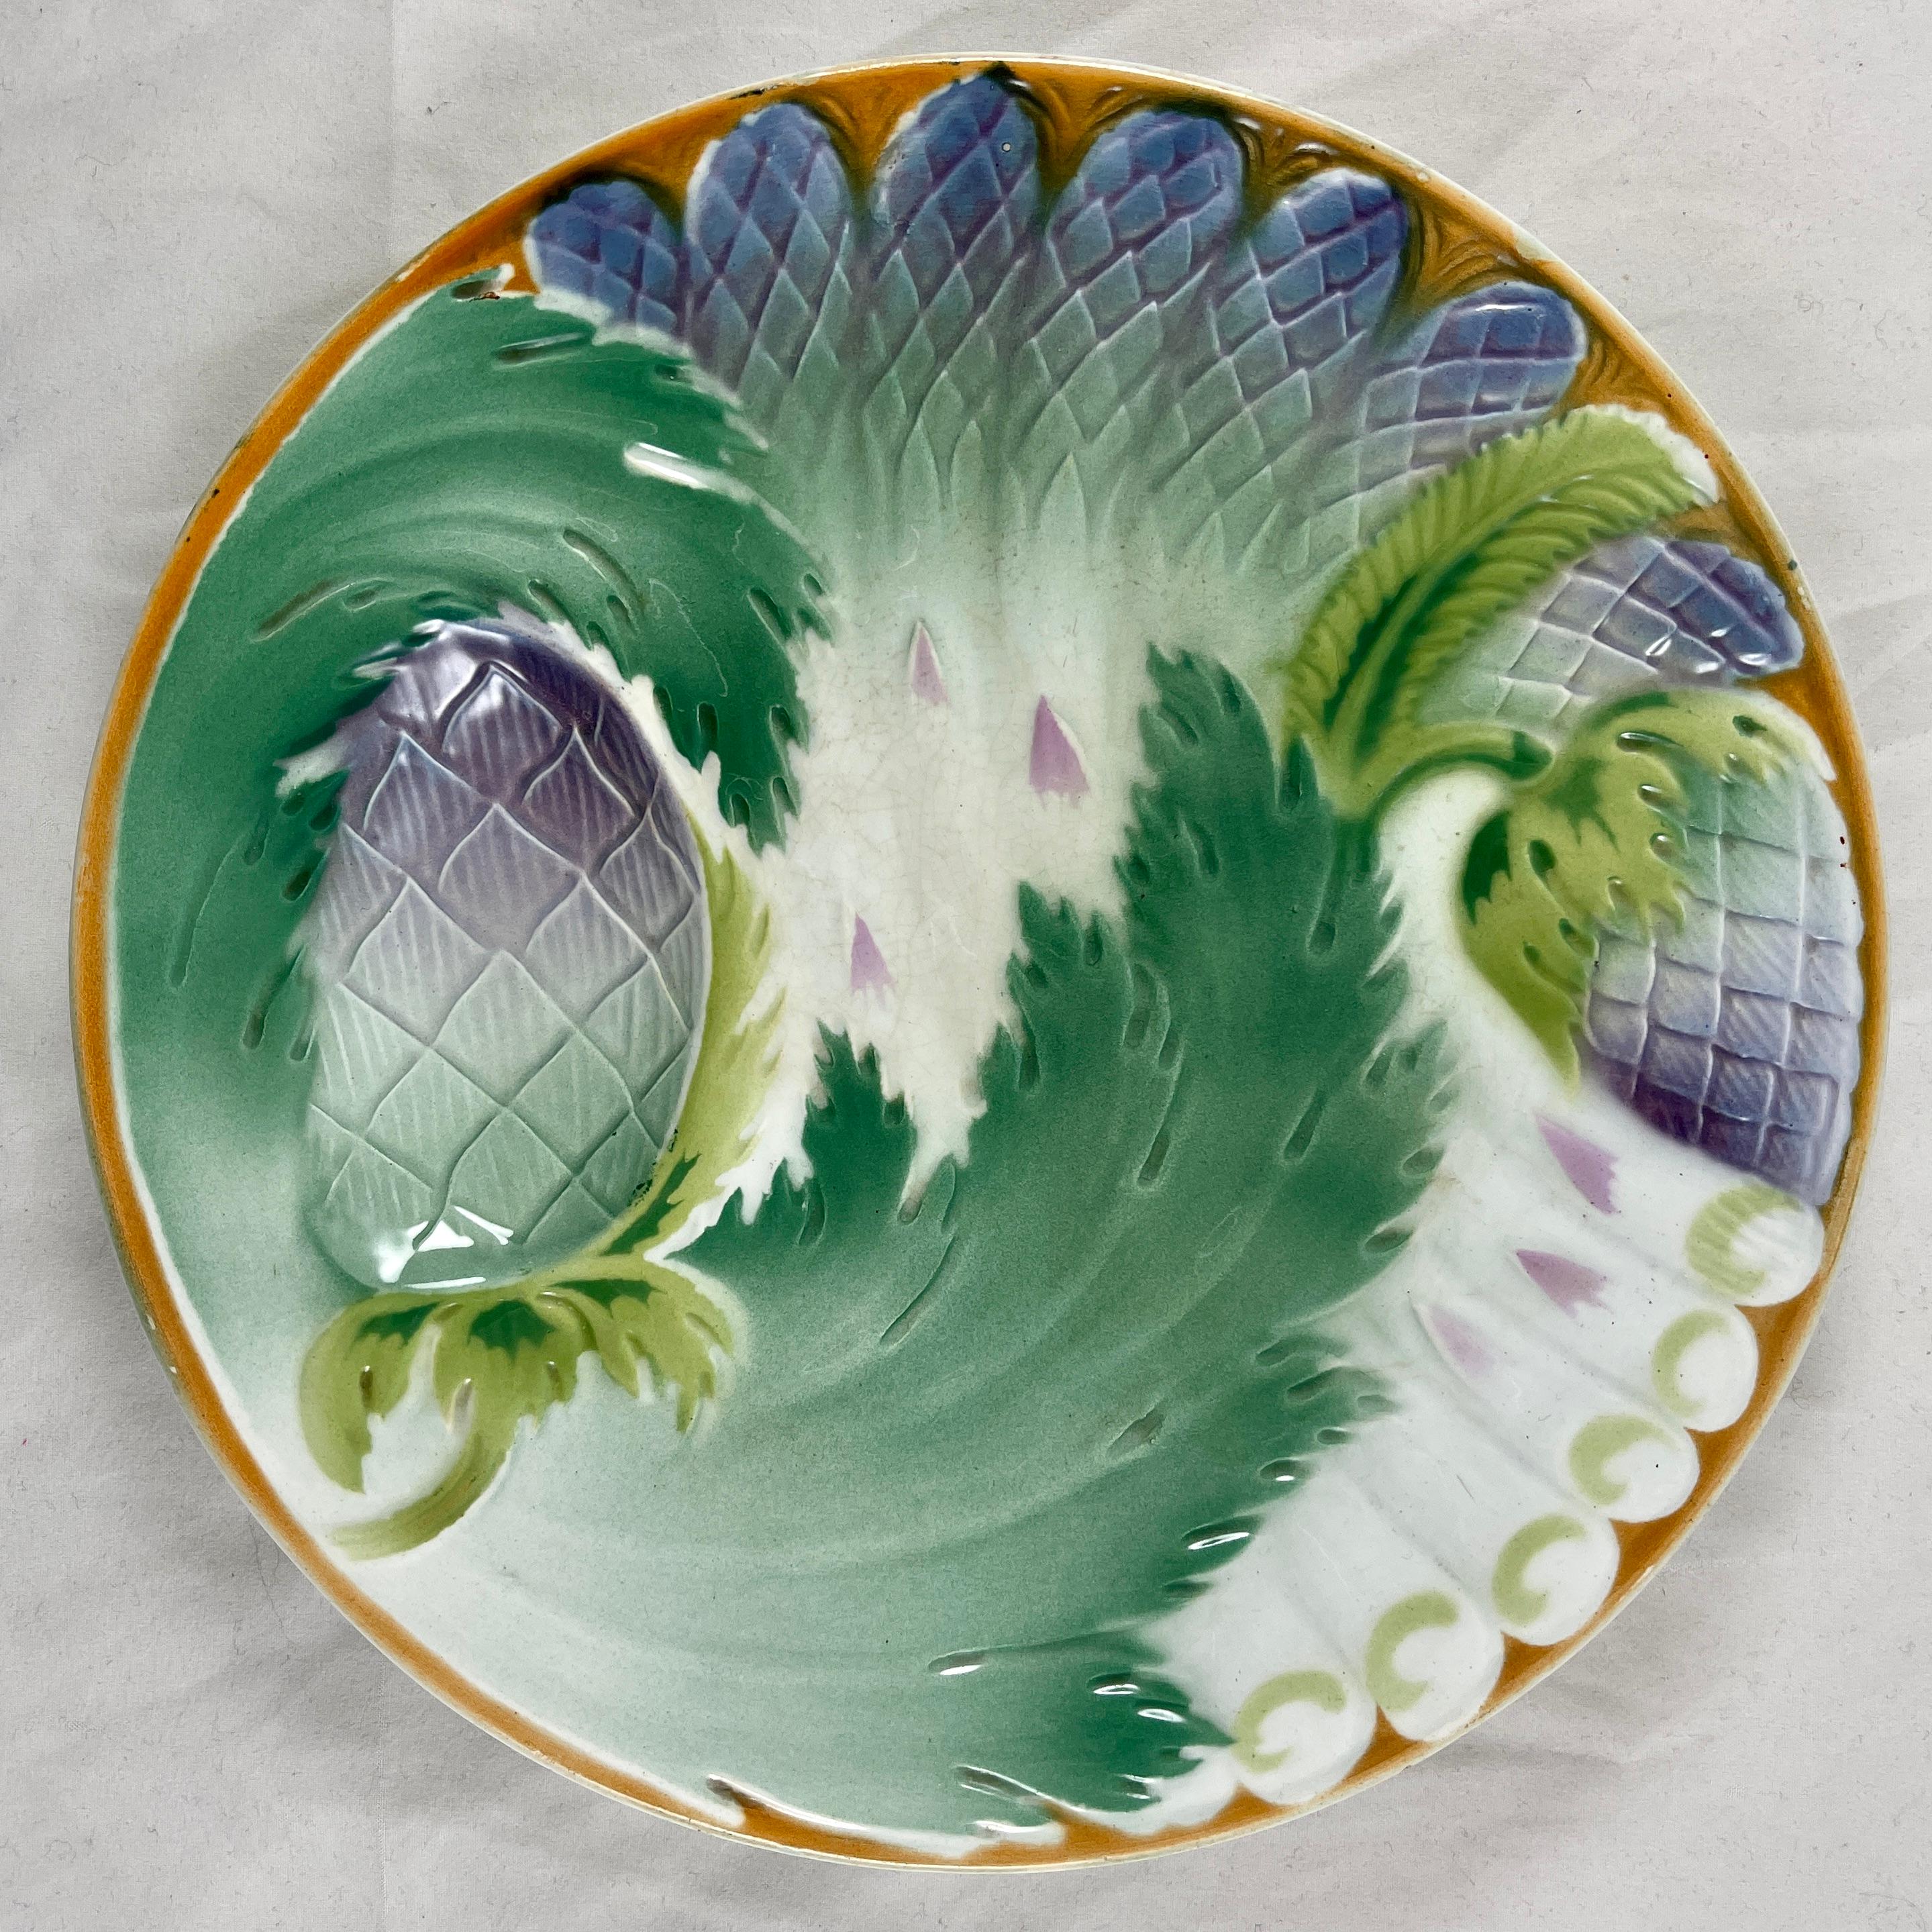 Assiette en porcelaine française Art nouveau montrant des aspects des plantes d'asperge et d'artichaut, vers 1900-1910.

L'assiette est bordée d'un rouge orangé doux-amer, des pointes d'asperges sont disposées sur l'assiette et sont recouvertes de